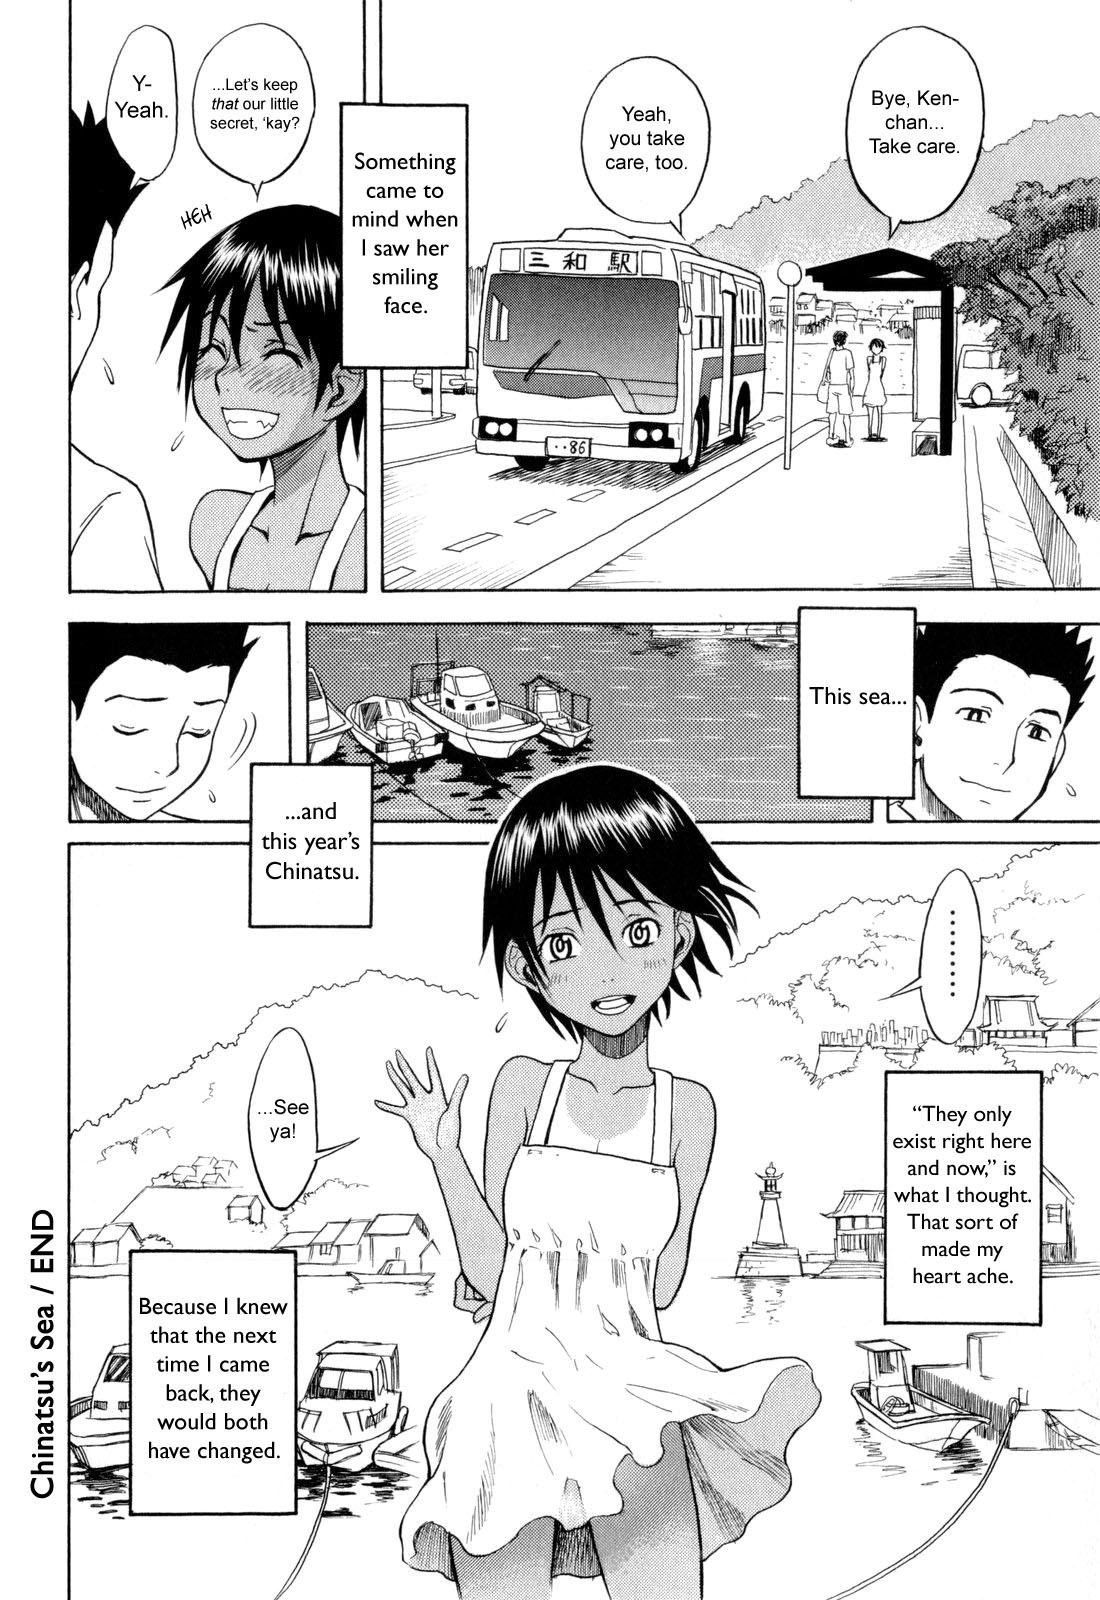 Roludo Chinatsu's Sea Chastity - Page 20